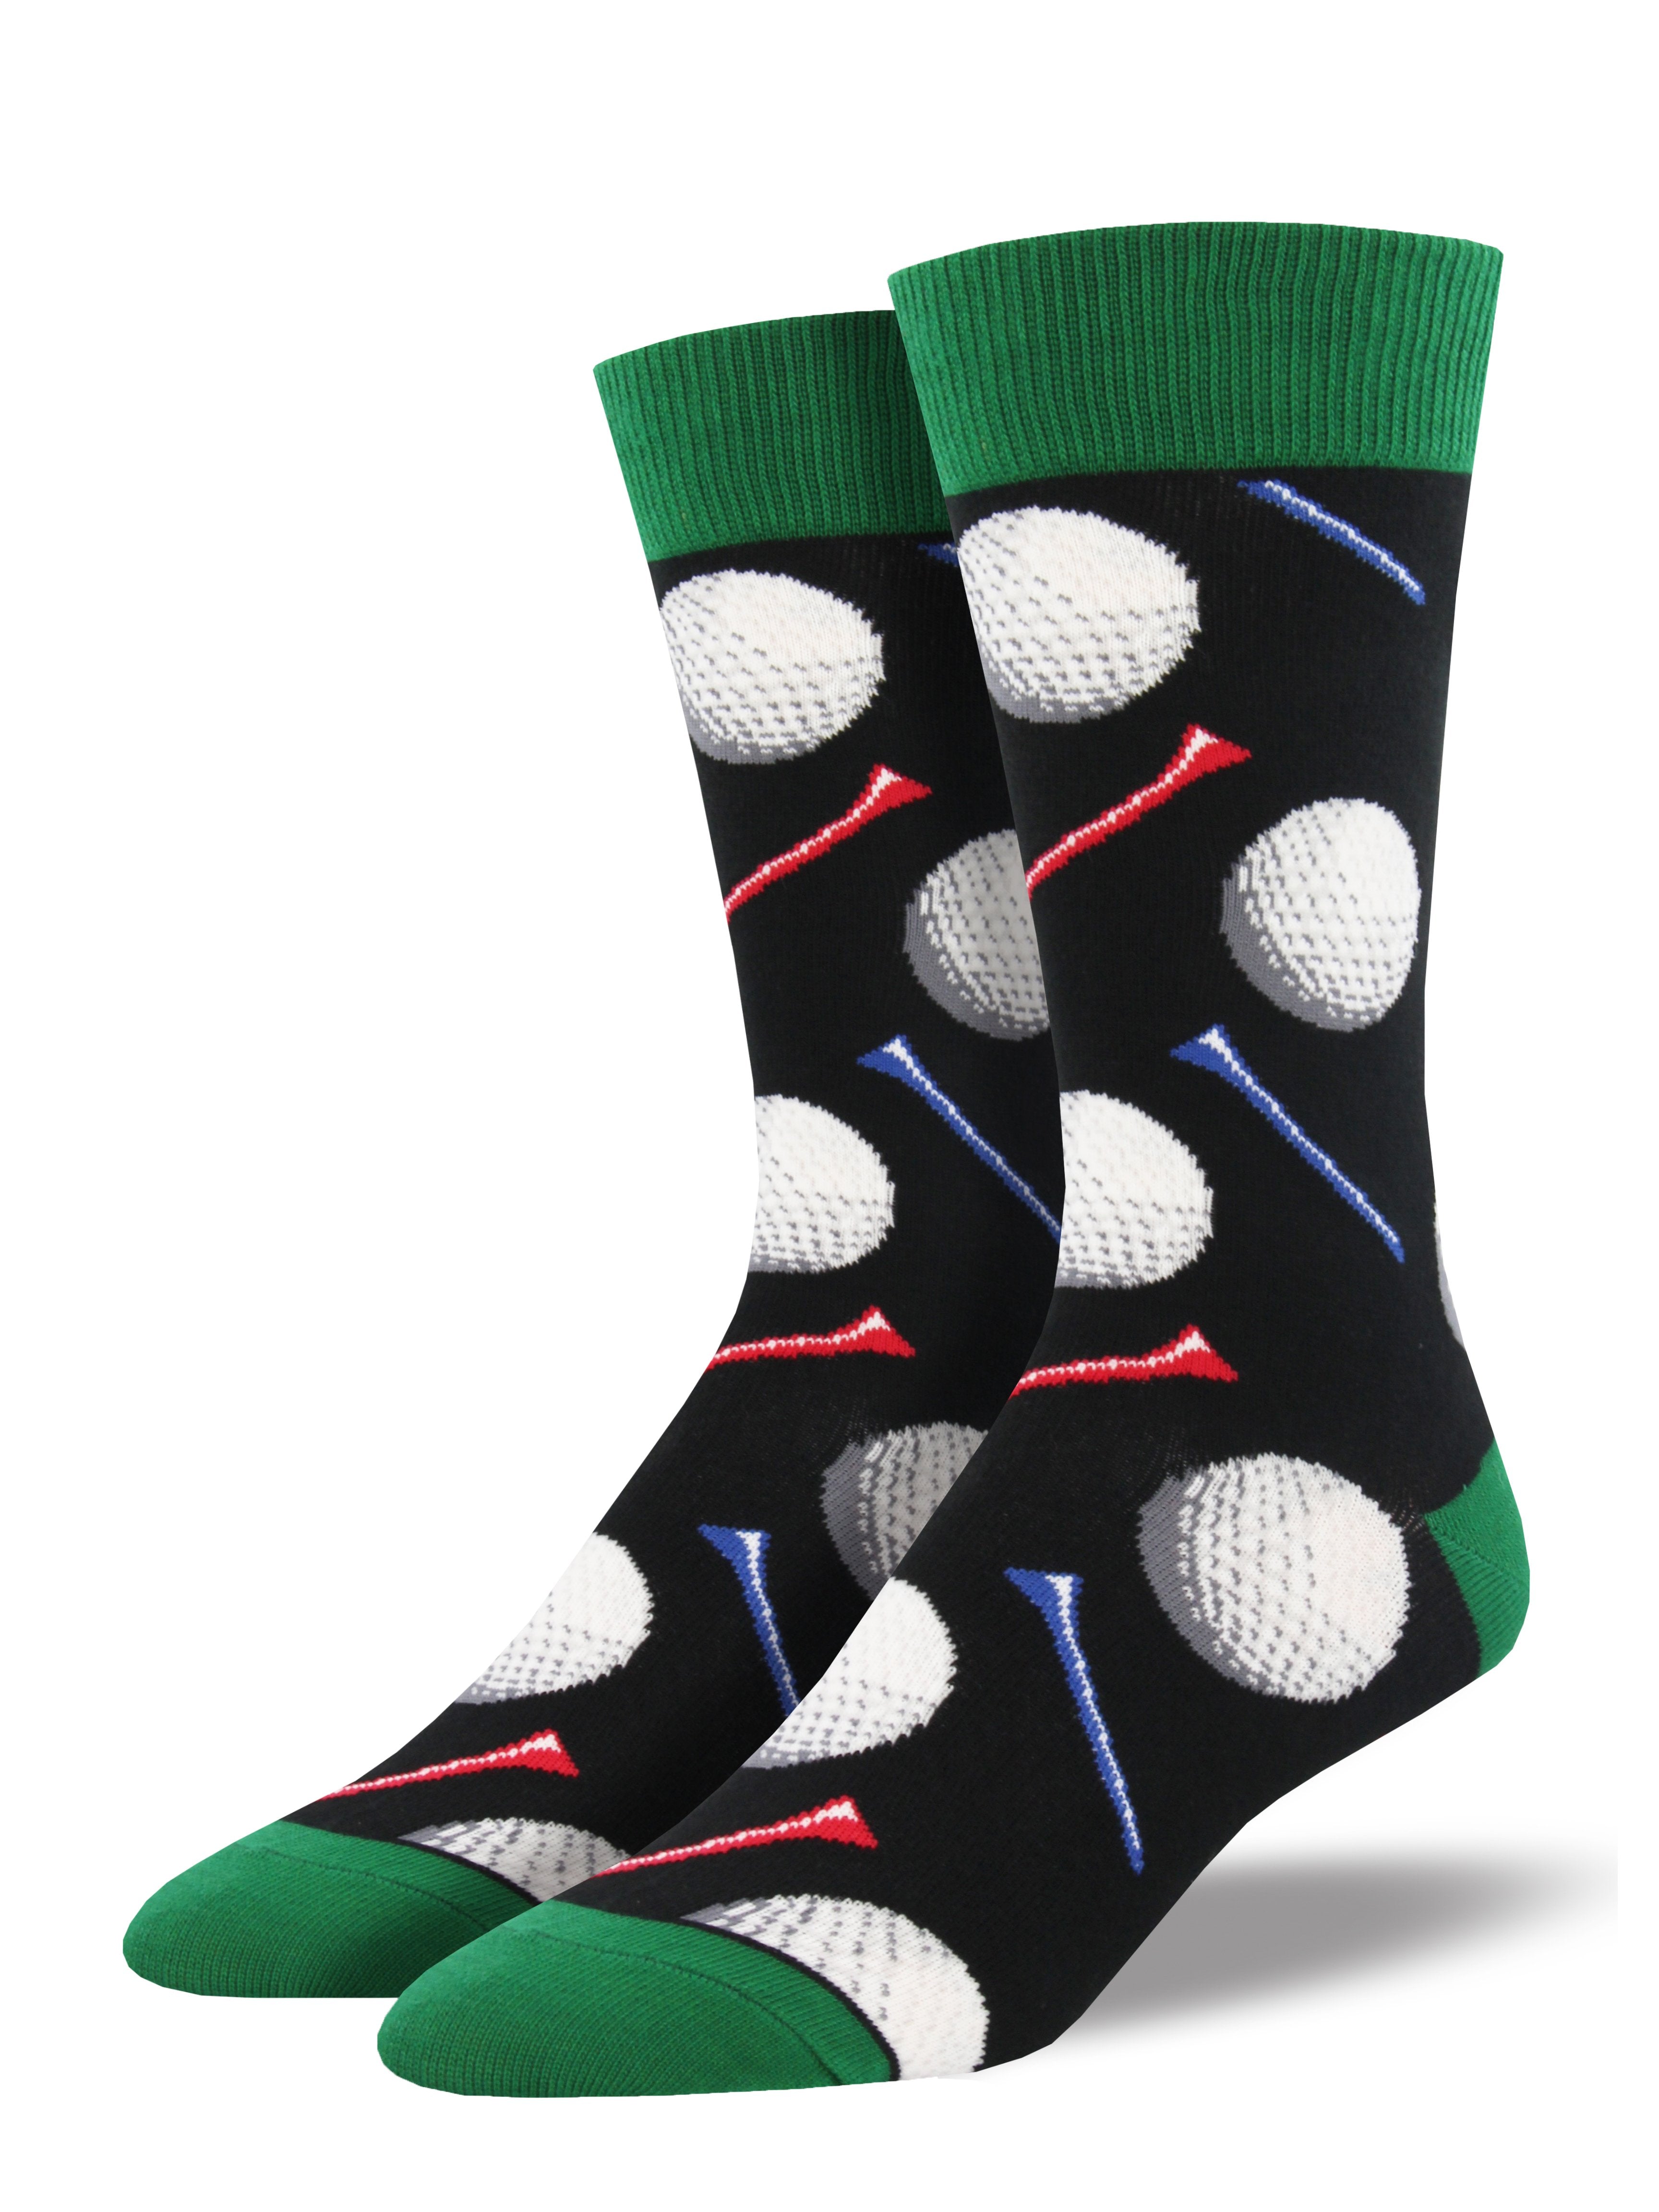 Men's "Tee It Up" Socks